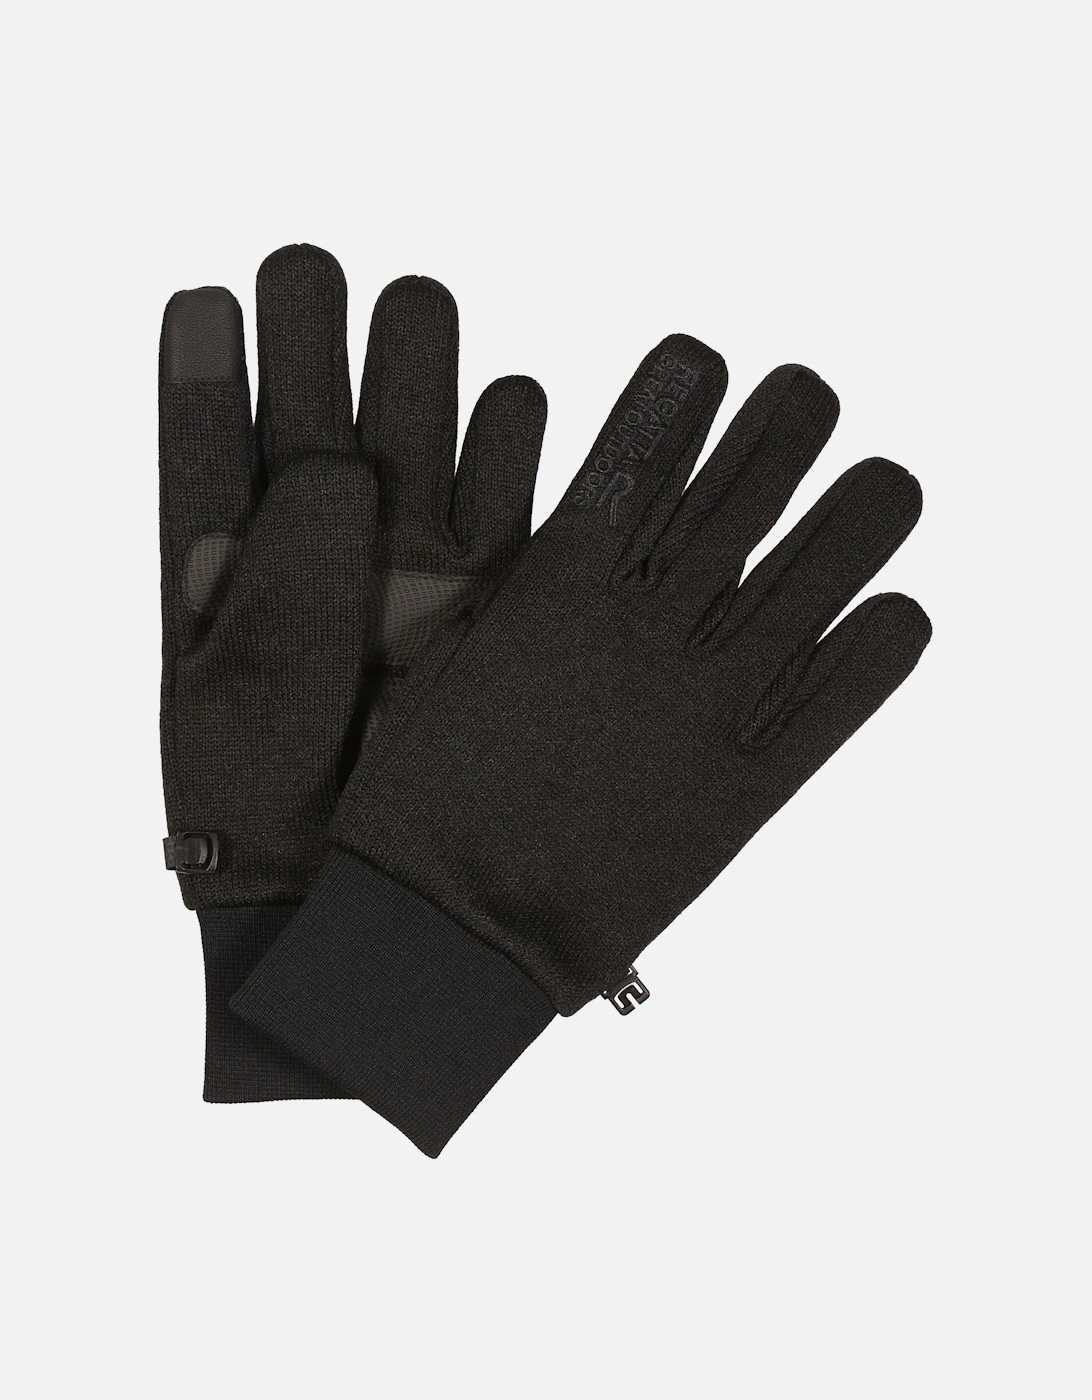 Mens Veris Winter Gloves, 4 of 3